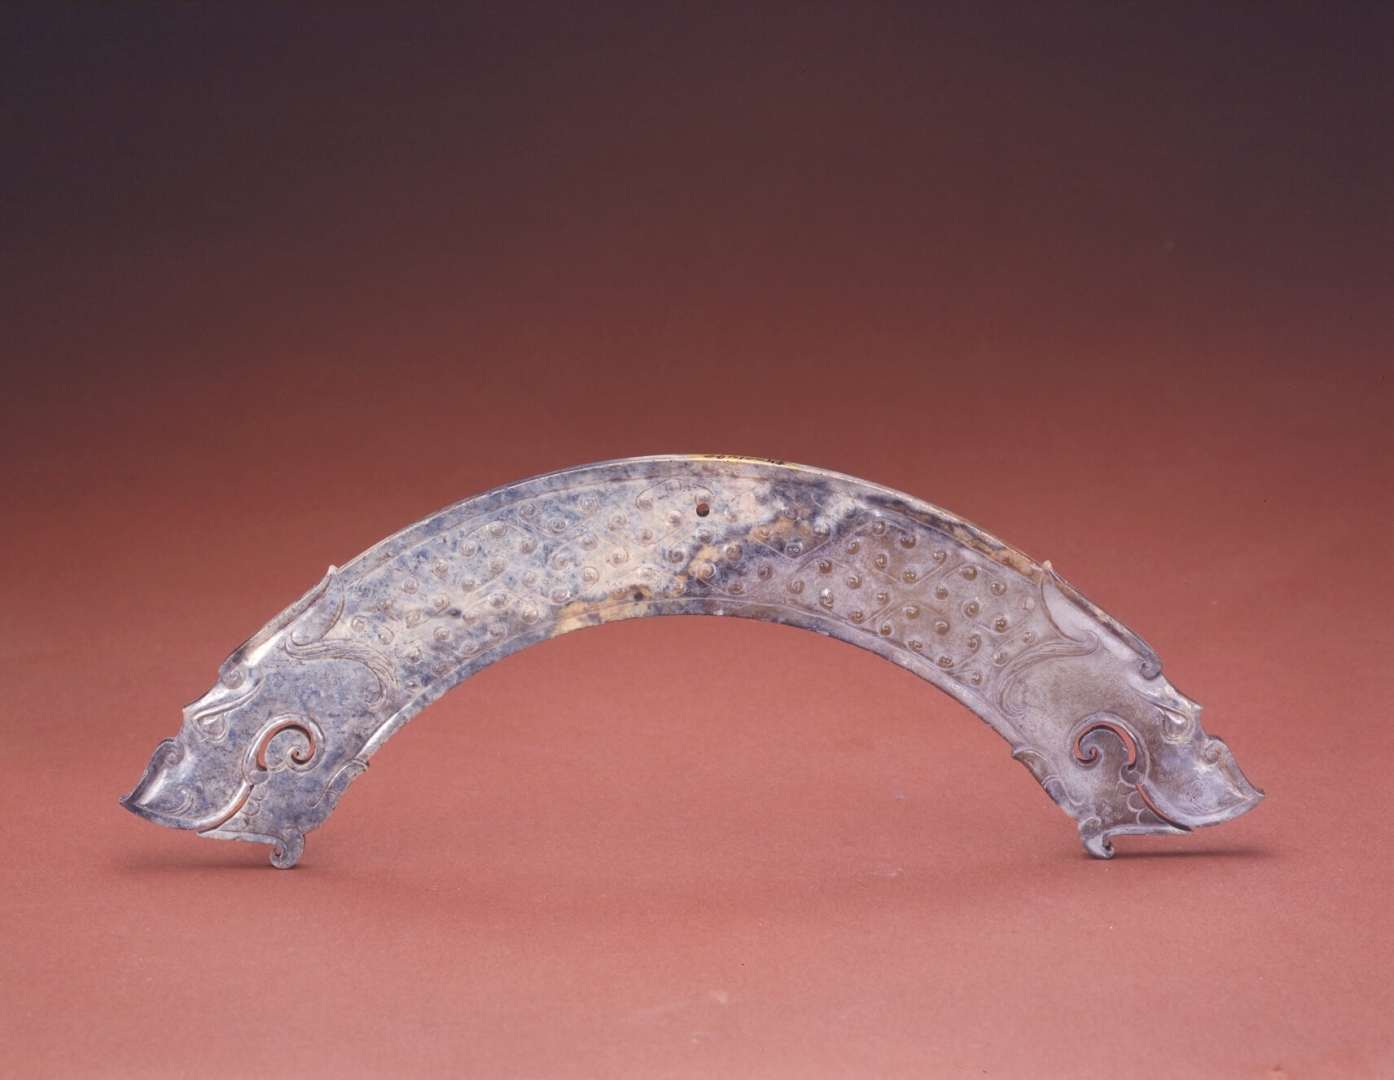 Huang (pieza de jade en forma <br />
de arco que se utilizaba como <br />
colgante) tallado con cabezas <br />
de dragón del Periodo de los <br />
Reinos Combatientes